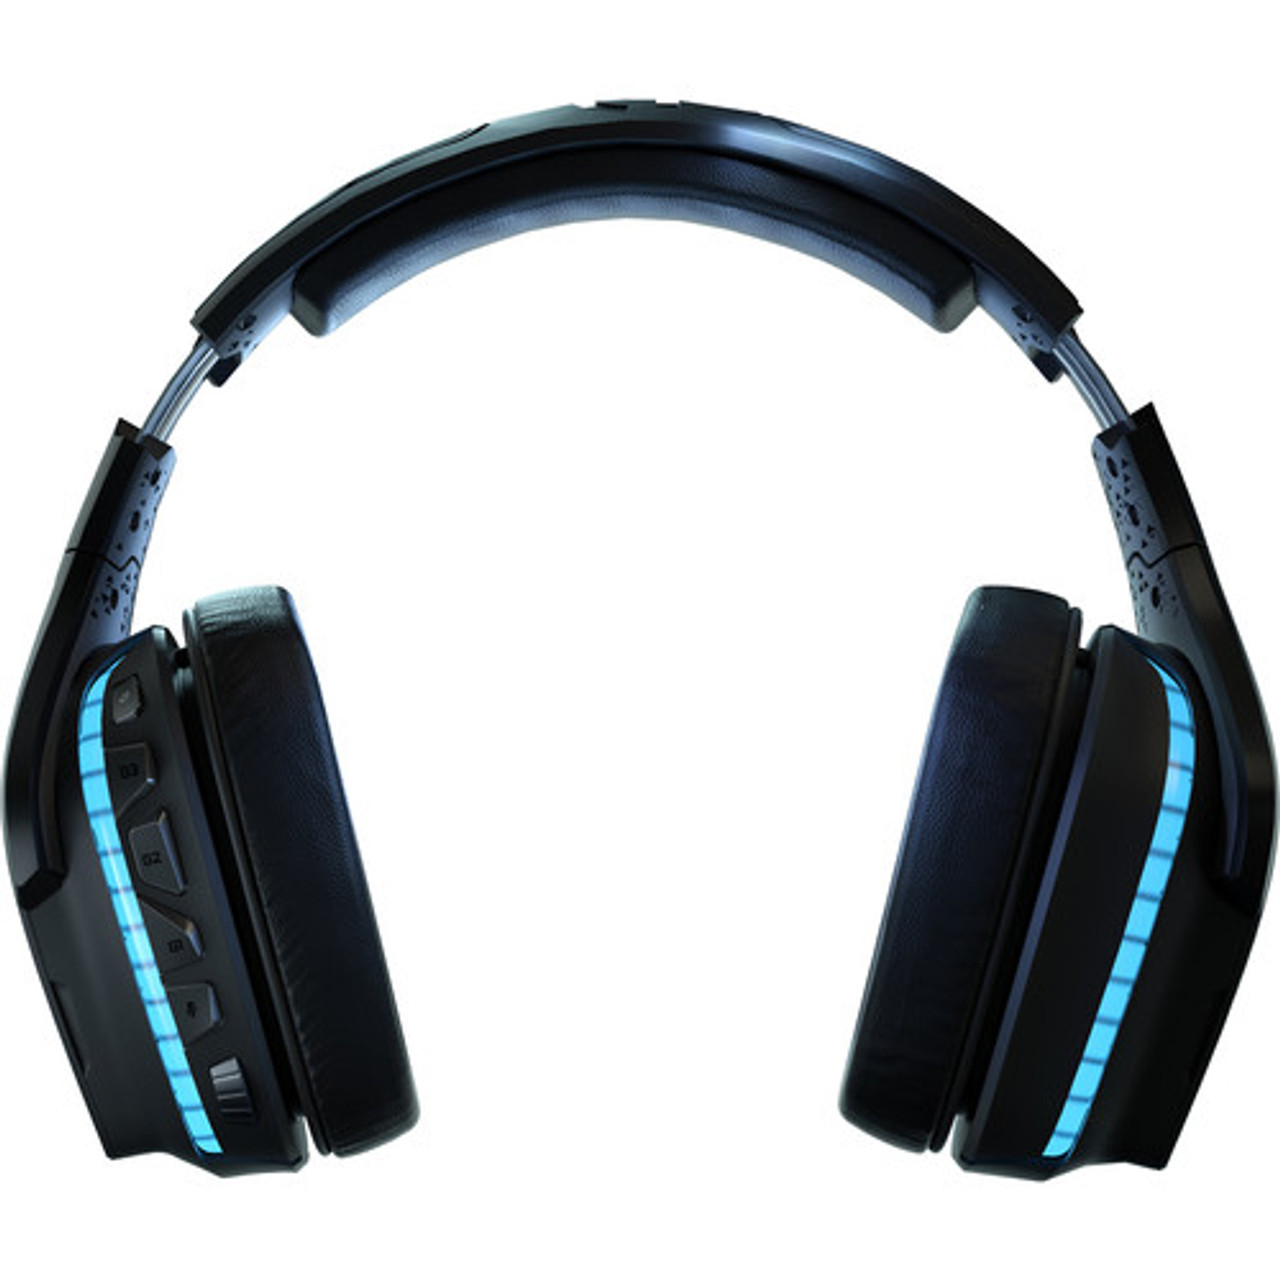 Auriculares inalambricos con microfono logitech g935 gaming lightsync 7.1  981-000742 black :: Compu Santa Fe